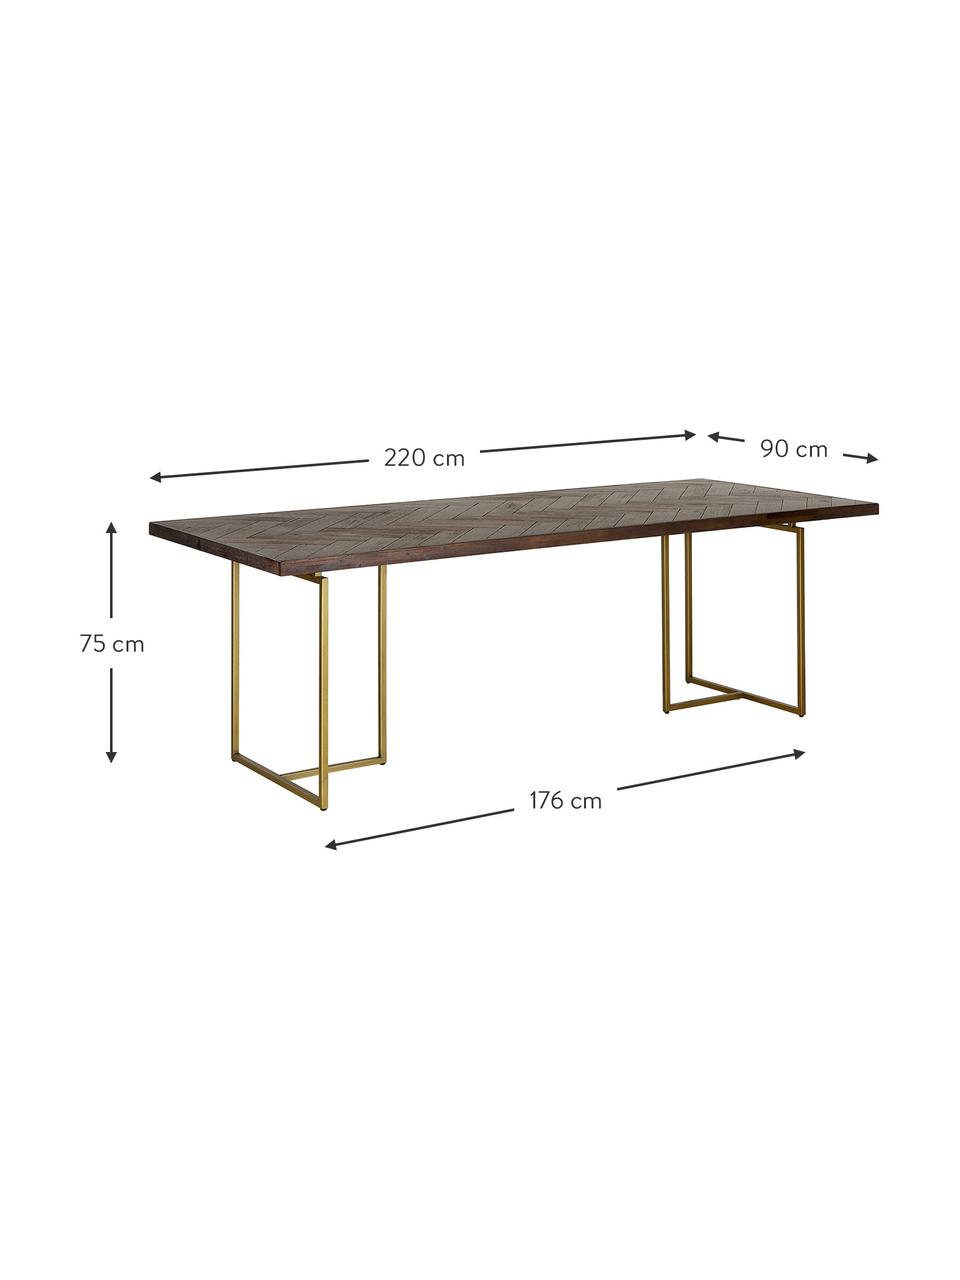 Jídelní stůl se vzorem rybí kosti Class, různé velikosti, Dřevo, Š 180 cm, H 90 cm